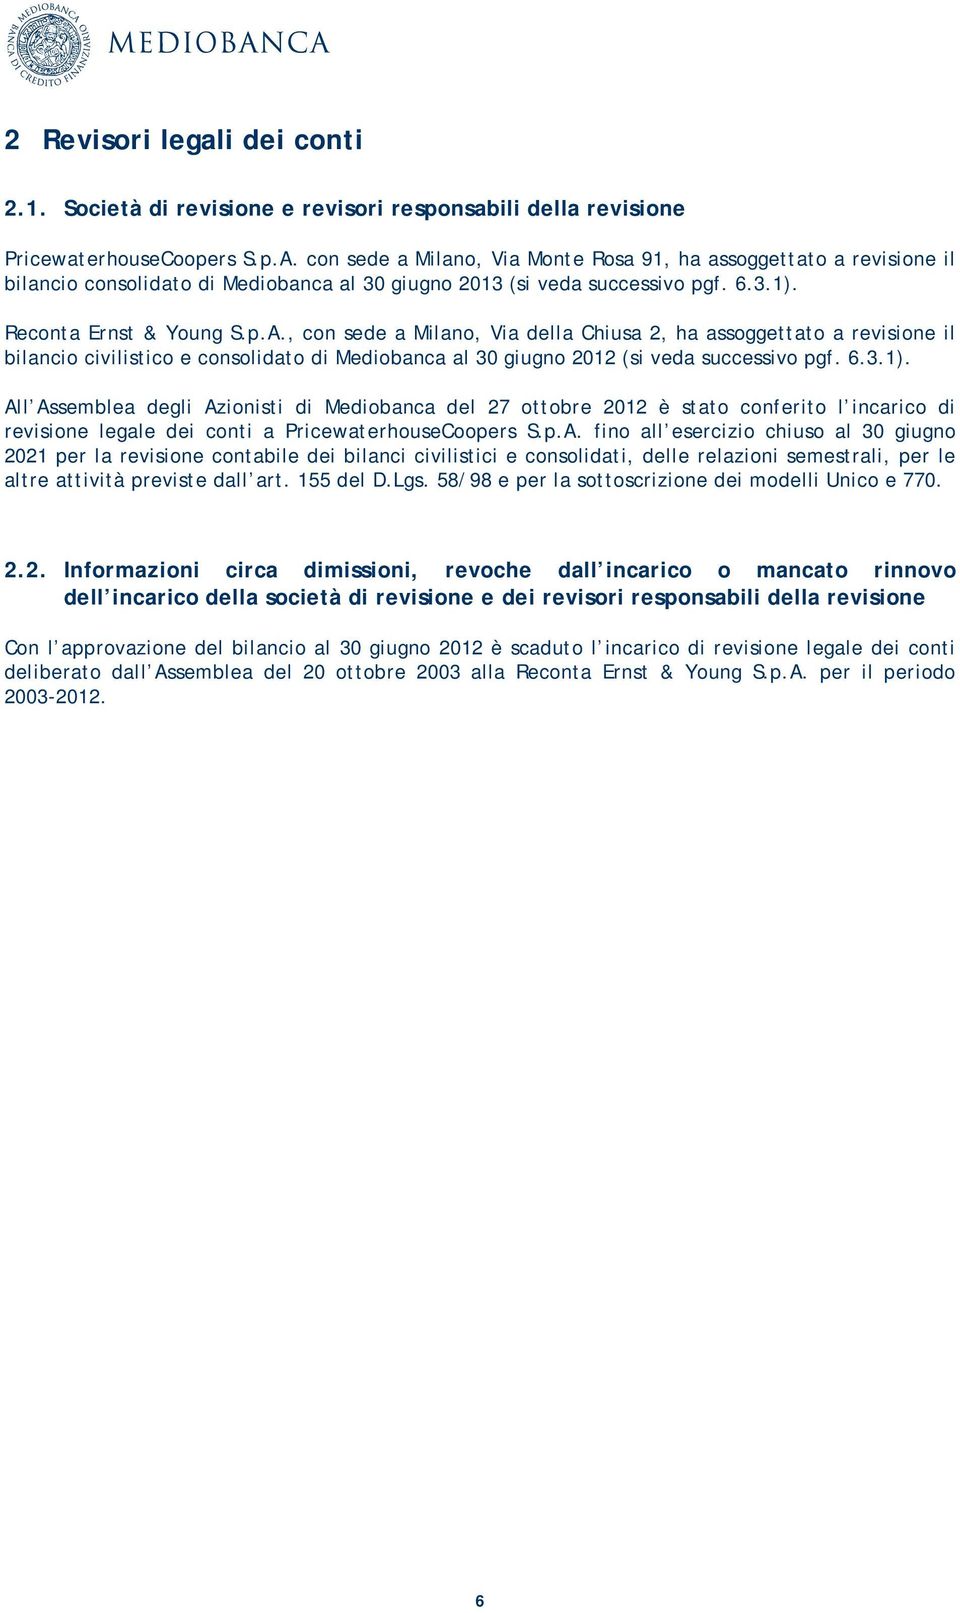 , con sede a Milano, Via della Chiusa 2, ha assoggettato a revisione il bilancio civilistico e consolidato di Mediobanca al 30 giugno 2012 (si veda successivo pgf. 6.3.1).